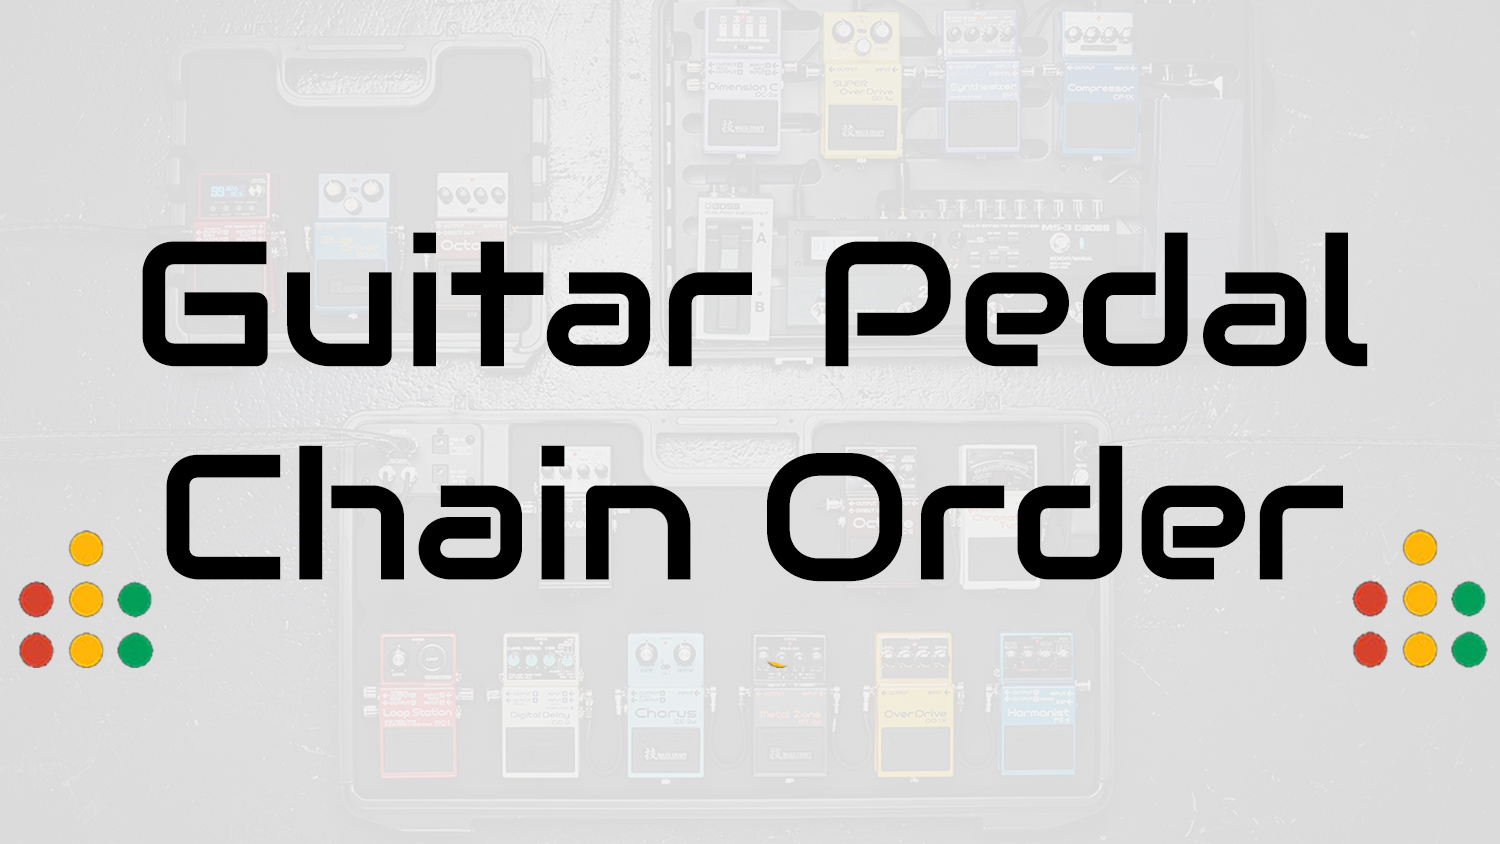 guitar pedal chain order